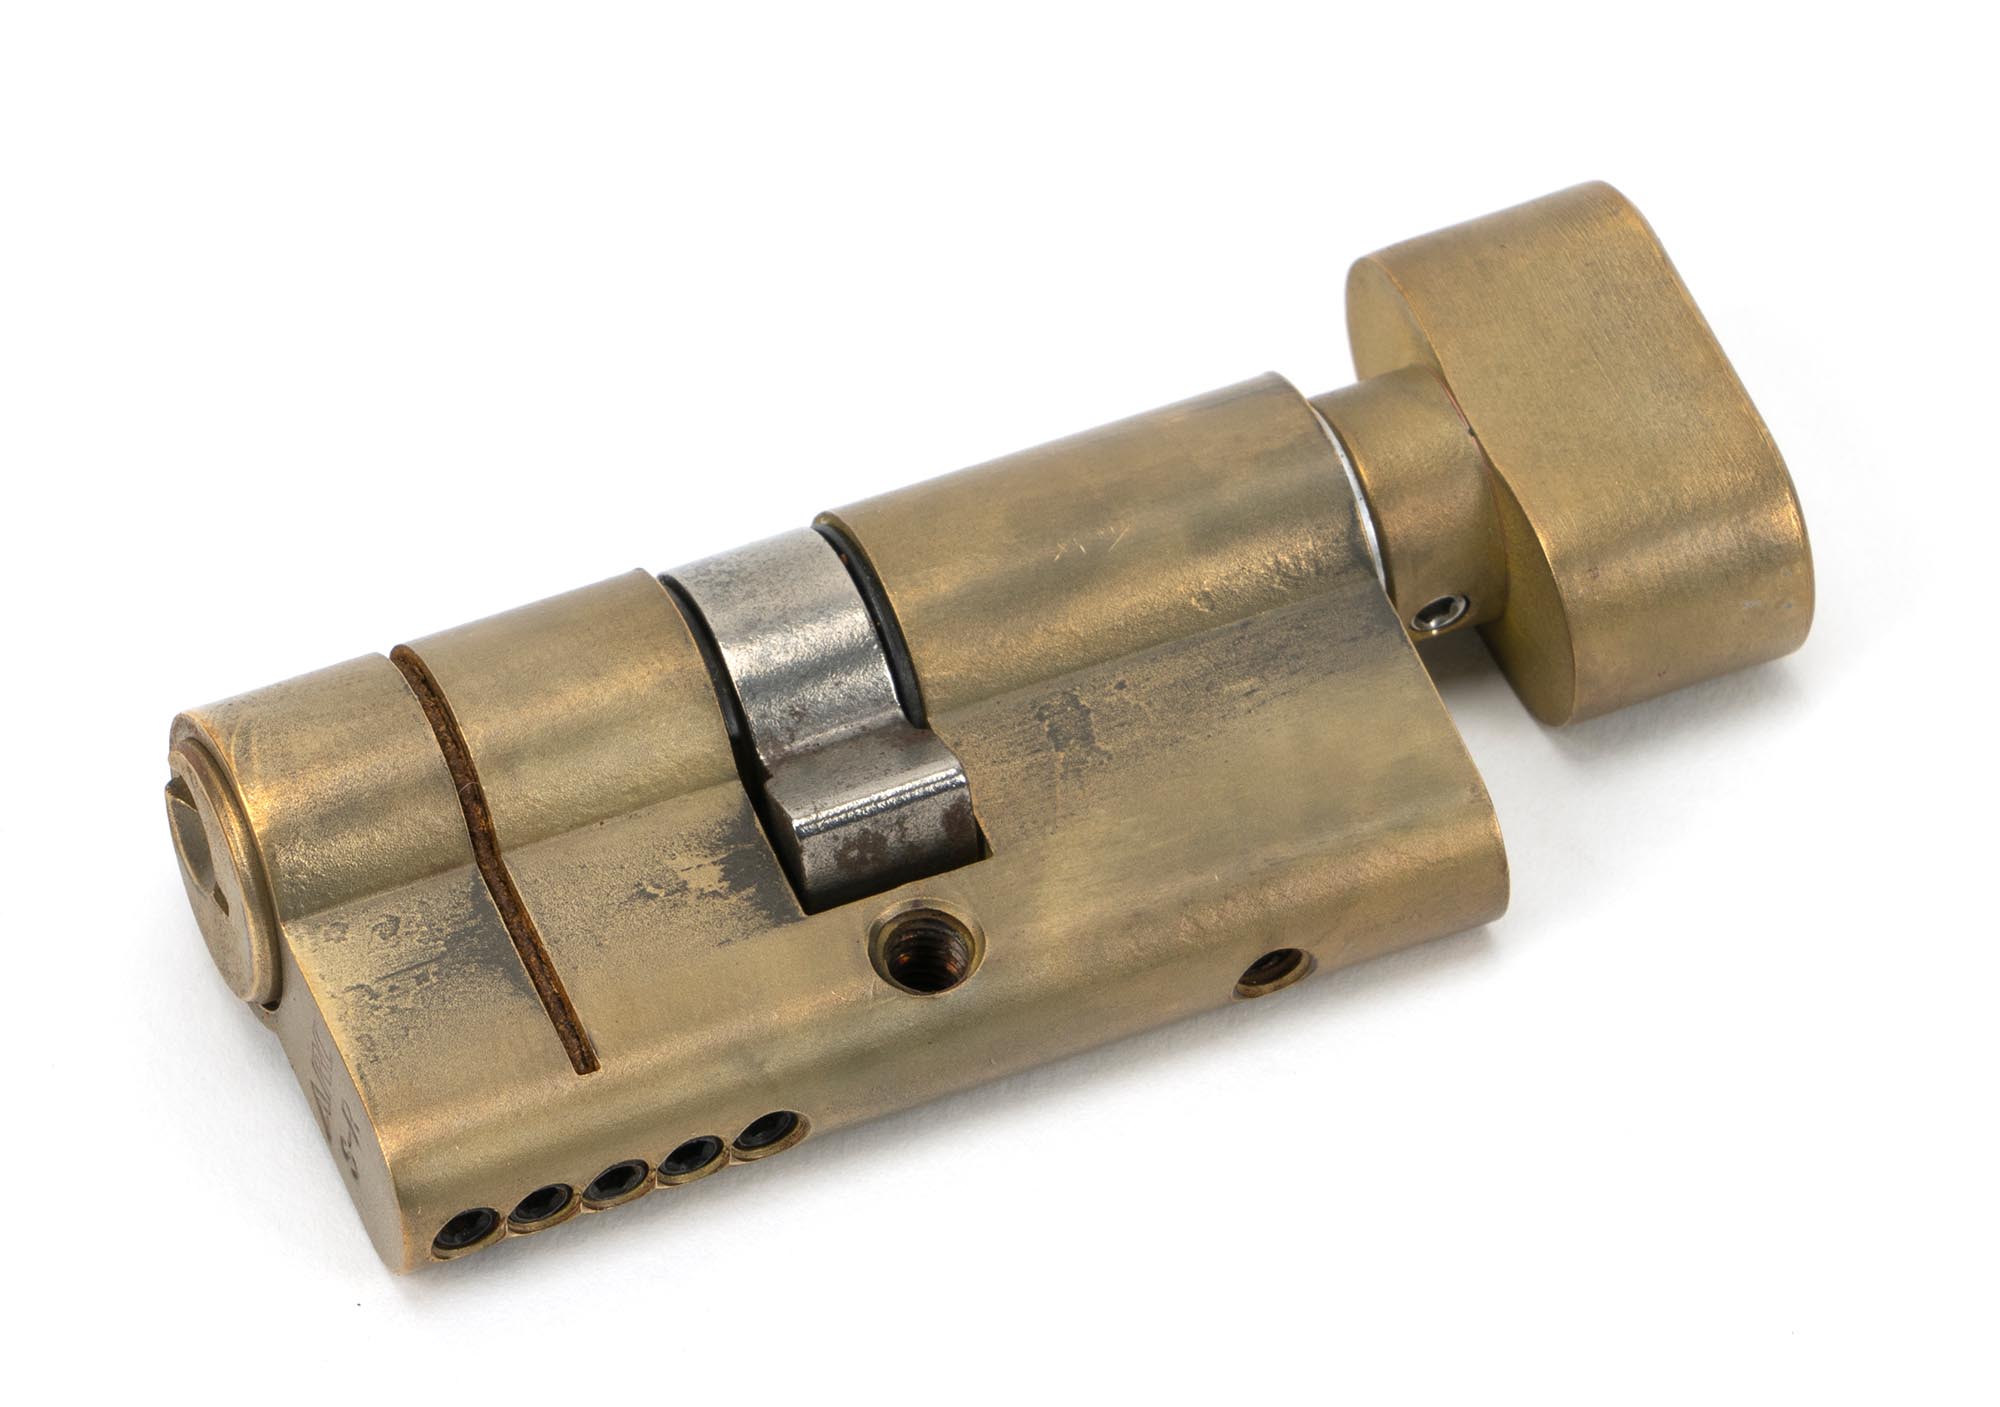 Aged Brass 30/30 5pin Euro Cylinder/Thumbturn KA